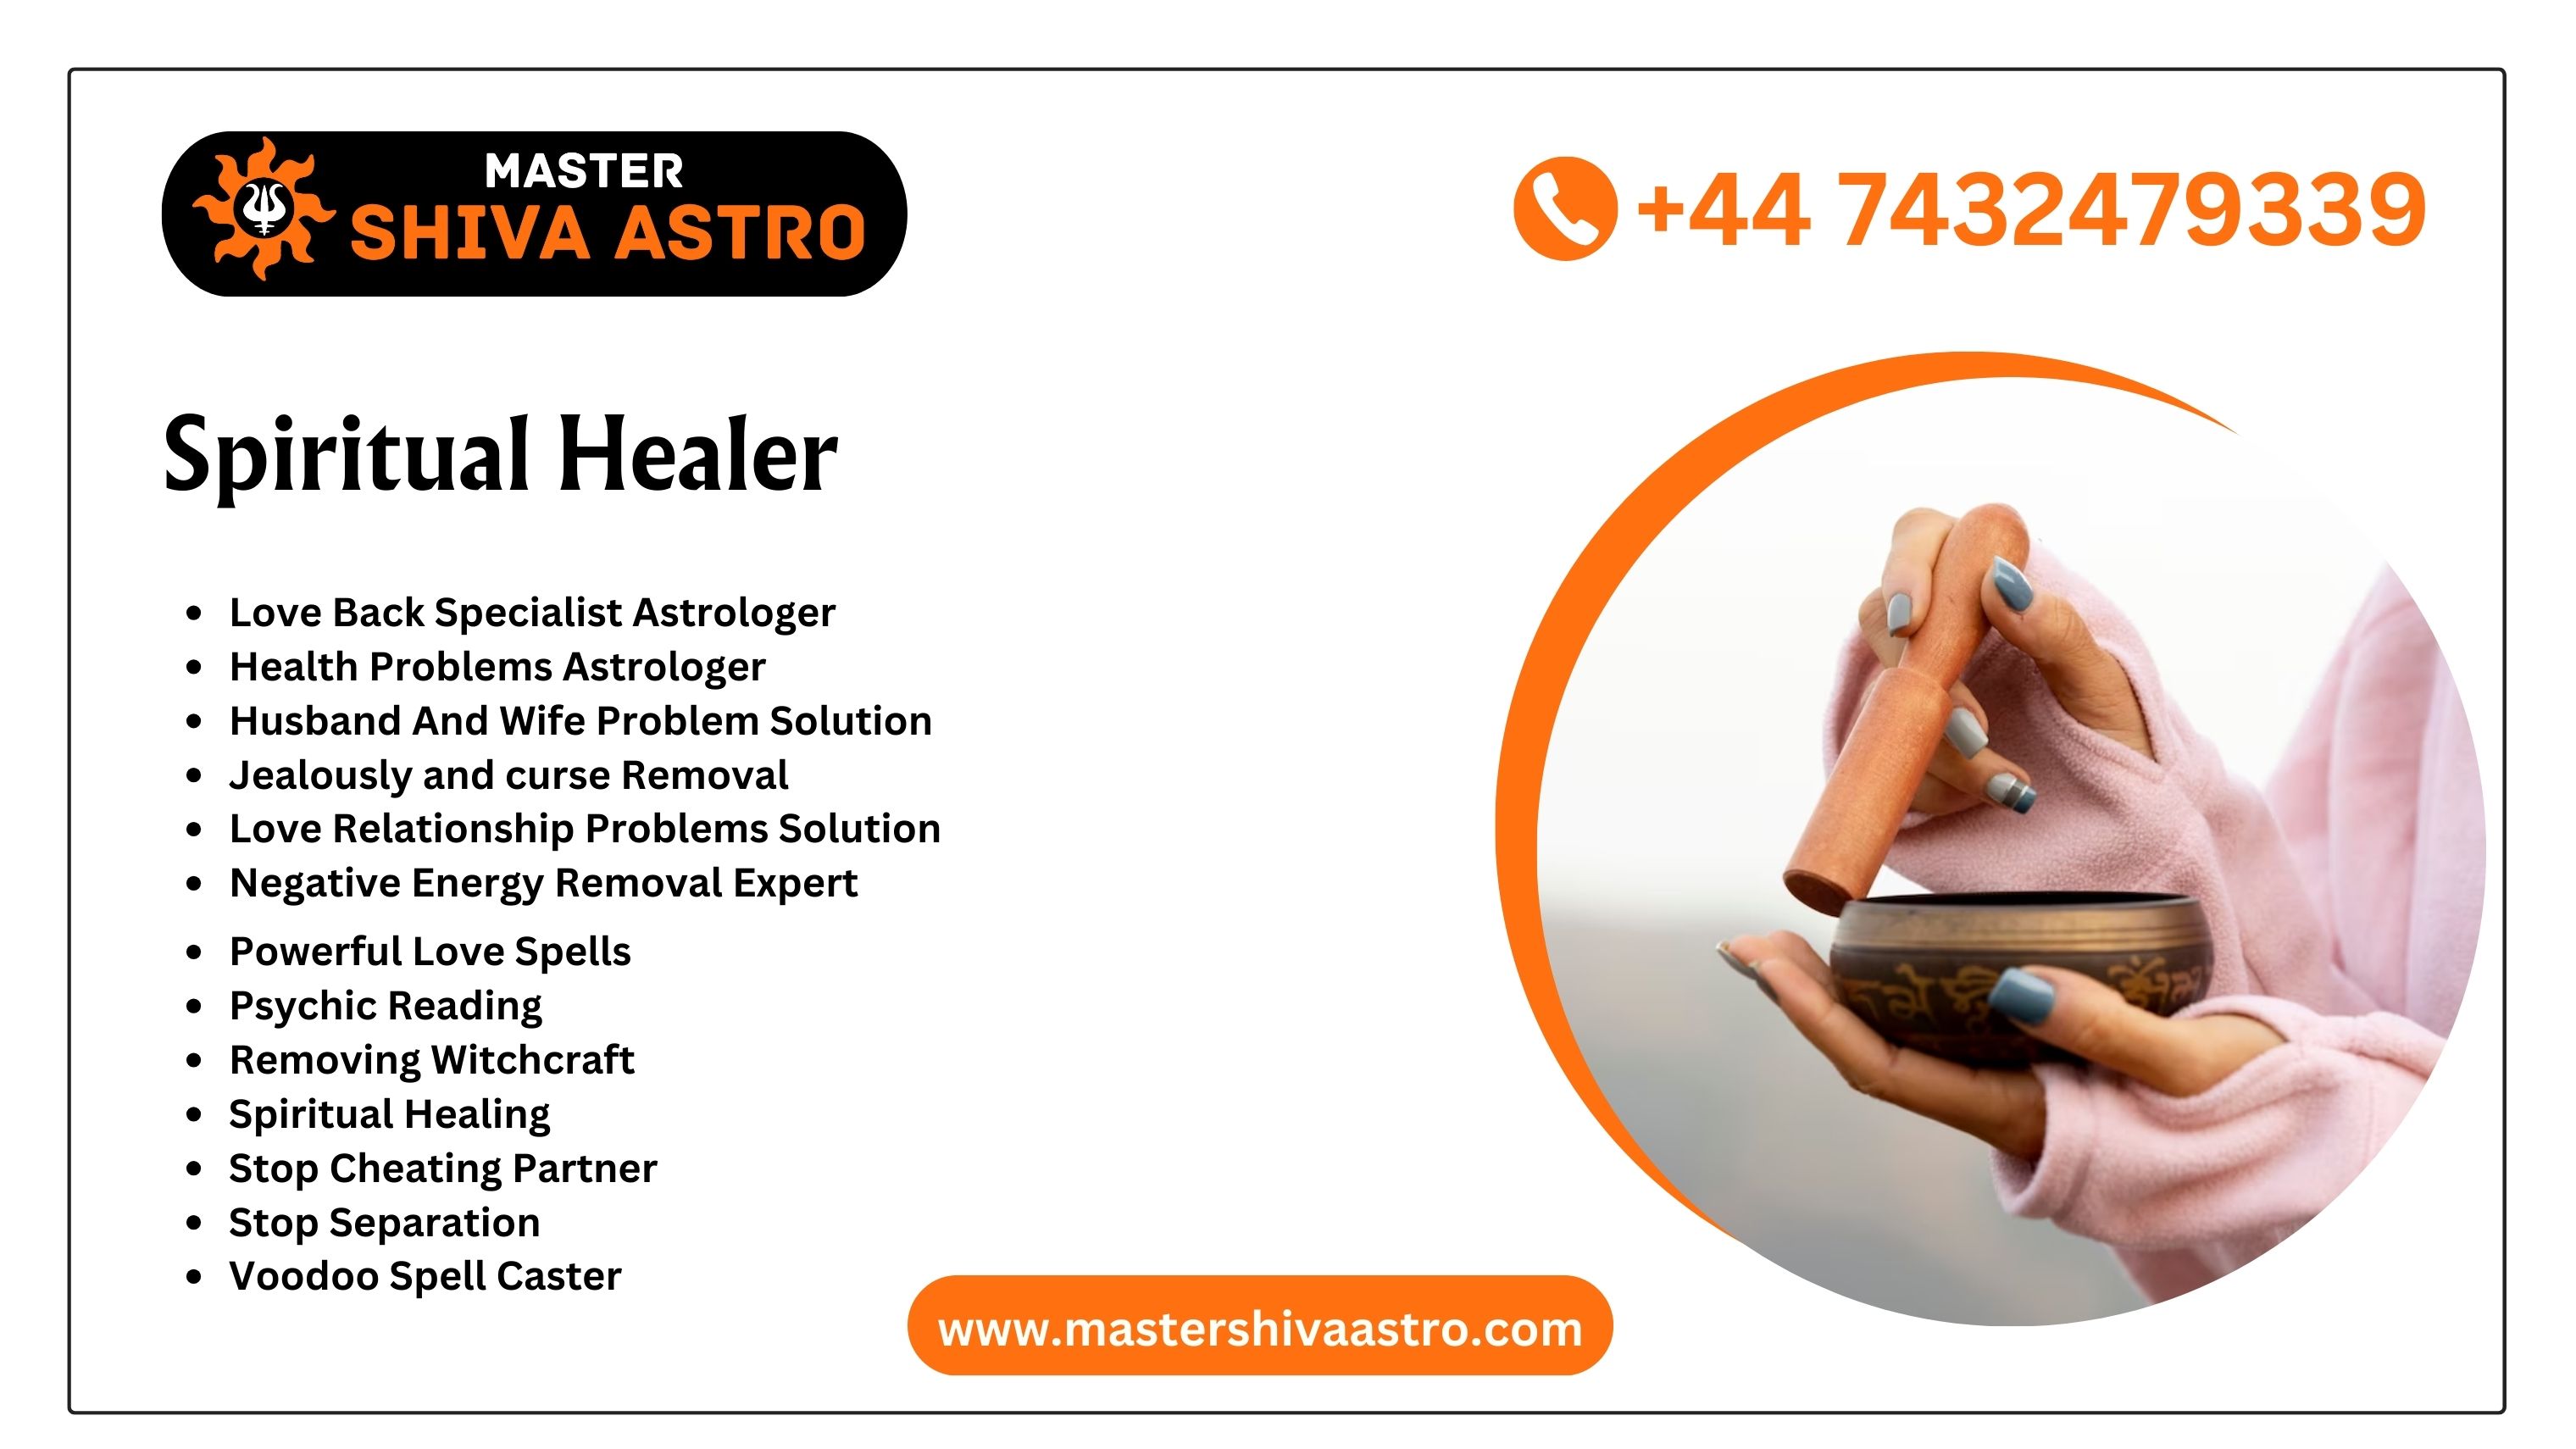 Spiritual Healer - Master Shiva